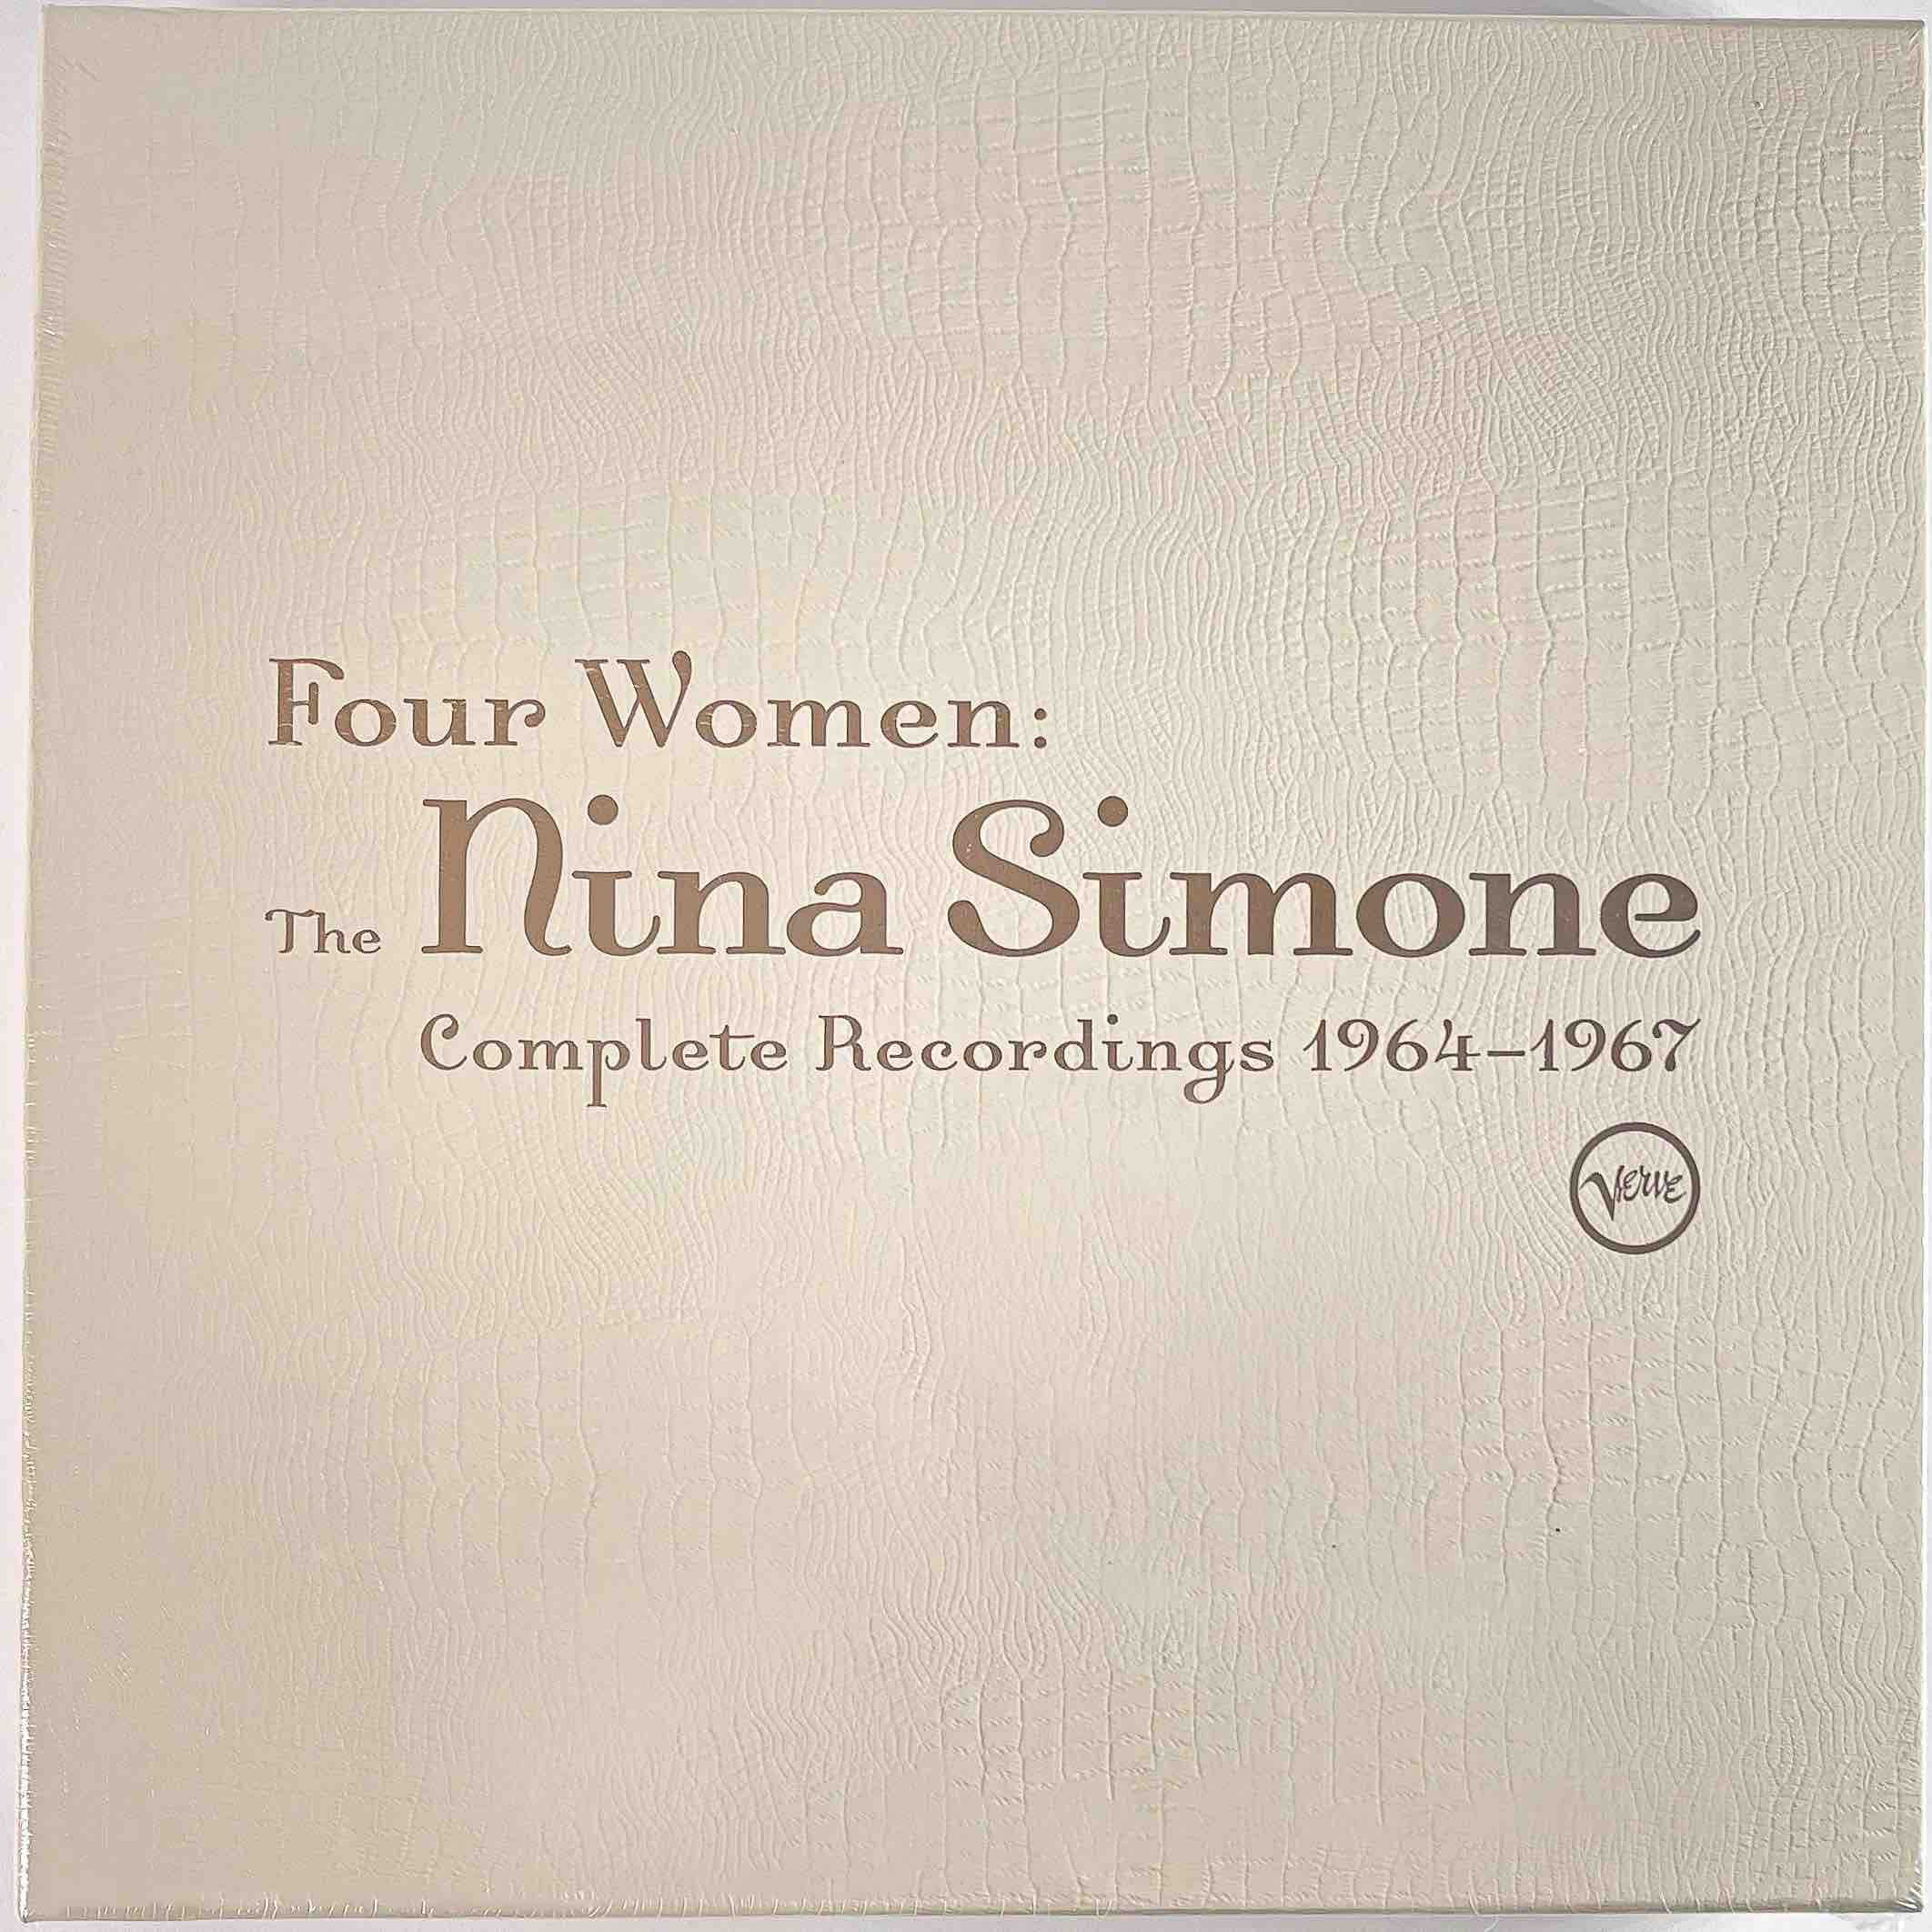 FLOOD - Nina Simone, “Four Women: The Nina Simone Complete